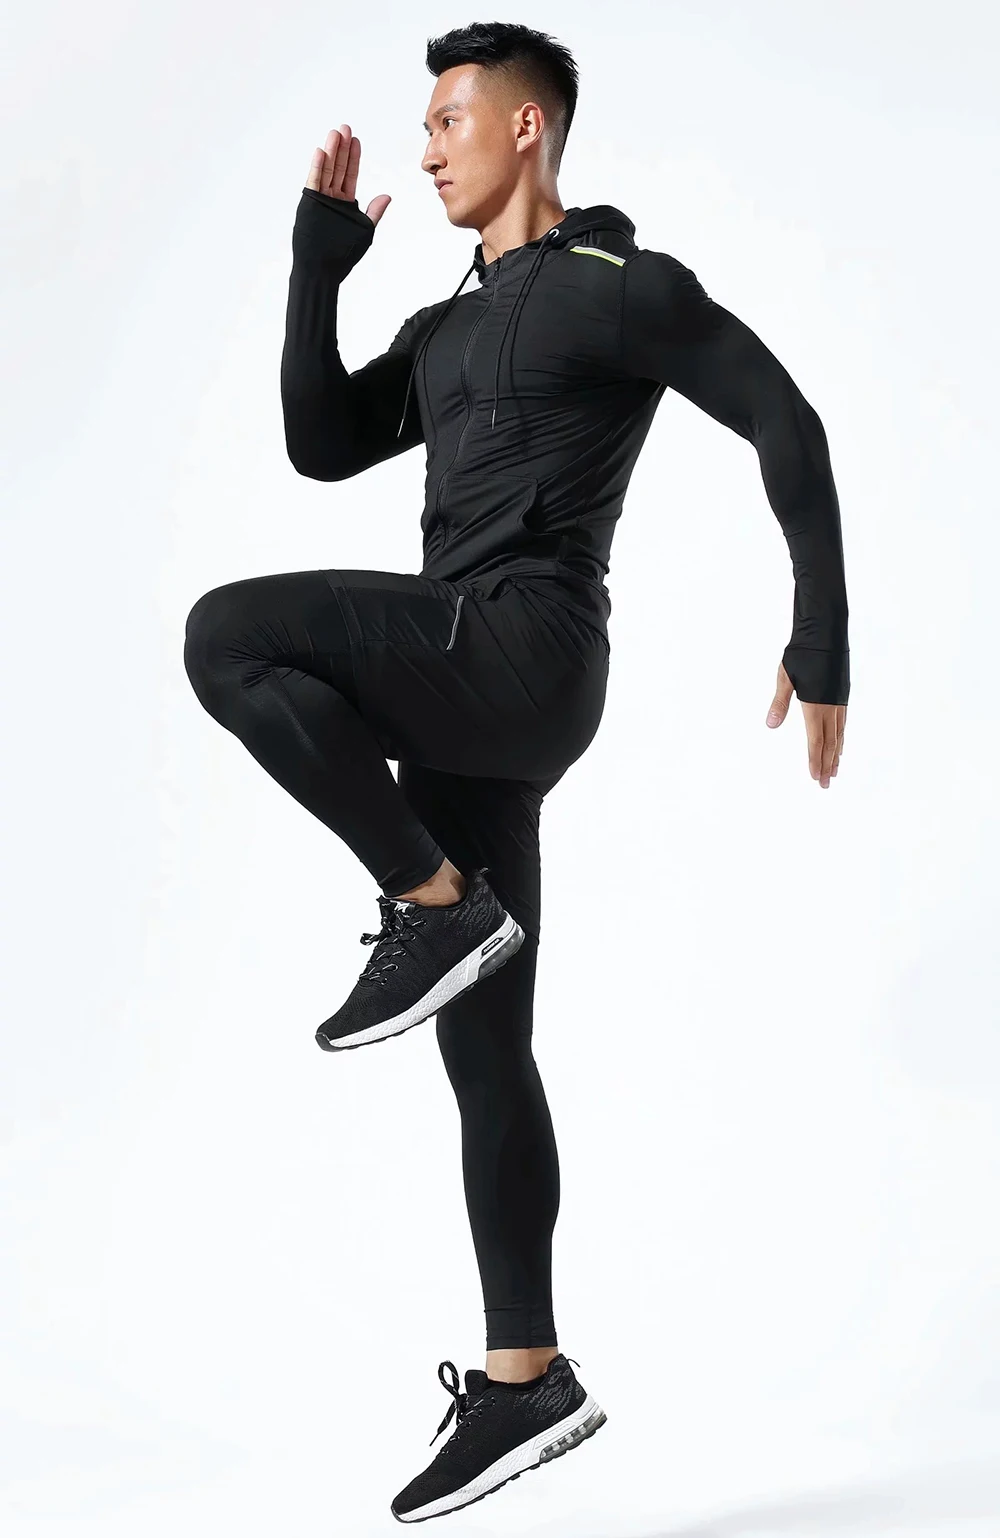 Мужская спортивная одежда с длинным рукавом для бодибилдинга и бега, облегающие куртки с капюшоном для баскетбола, футбола, тренировок, фитнеса, одежда для спортзала